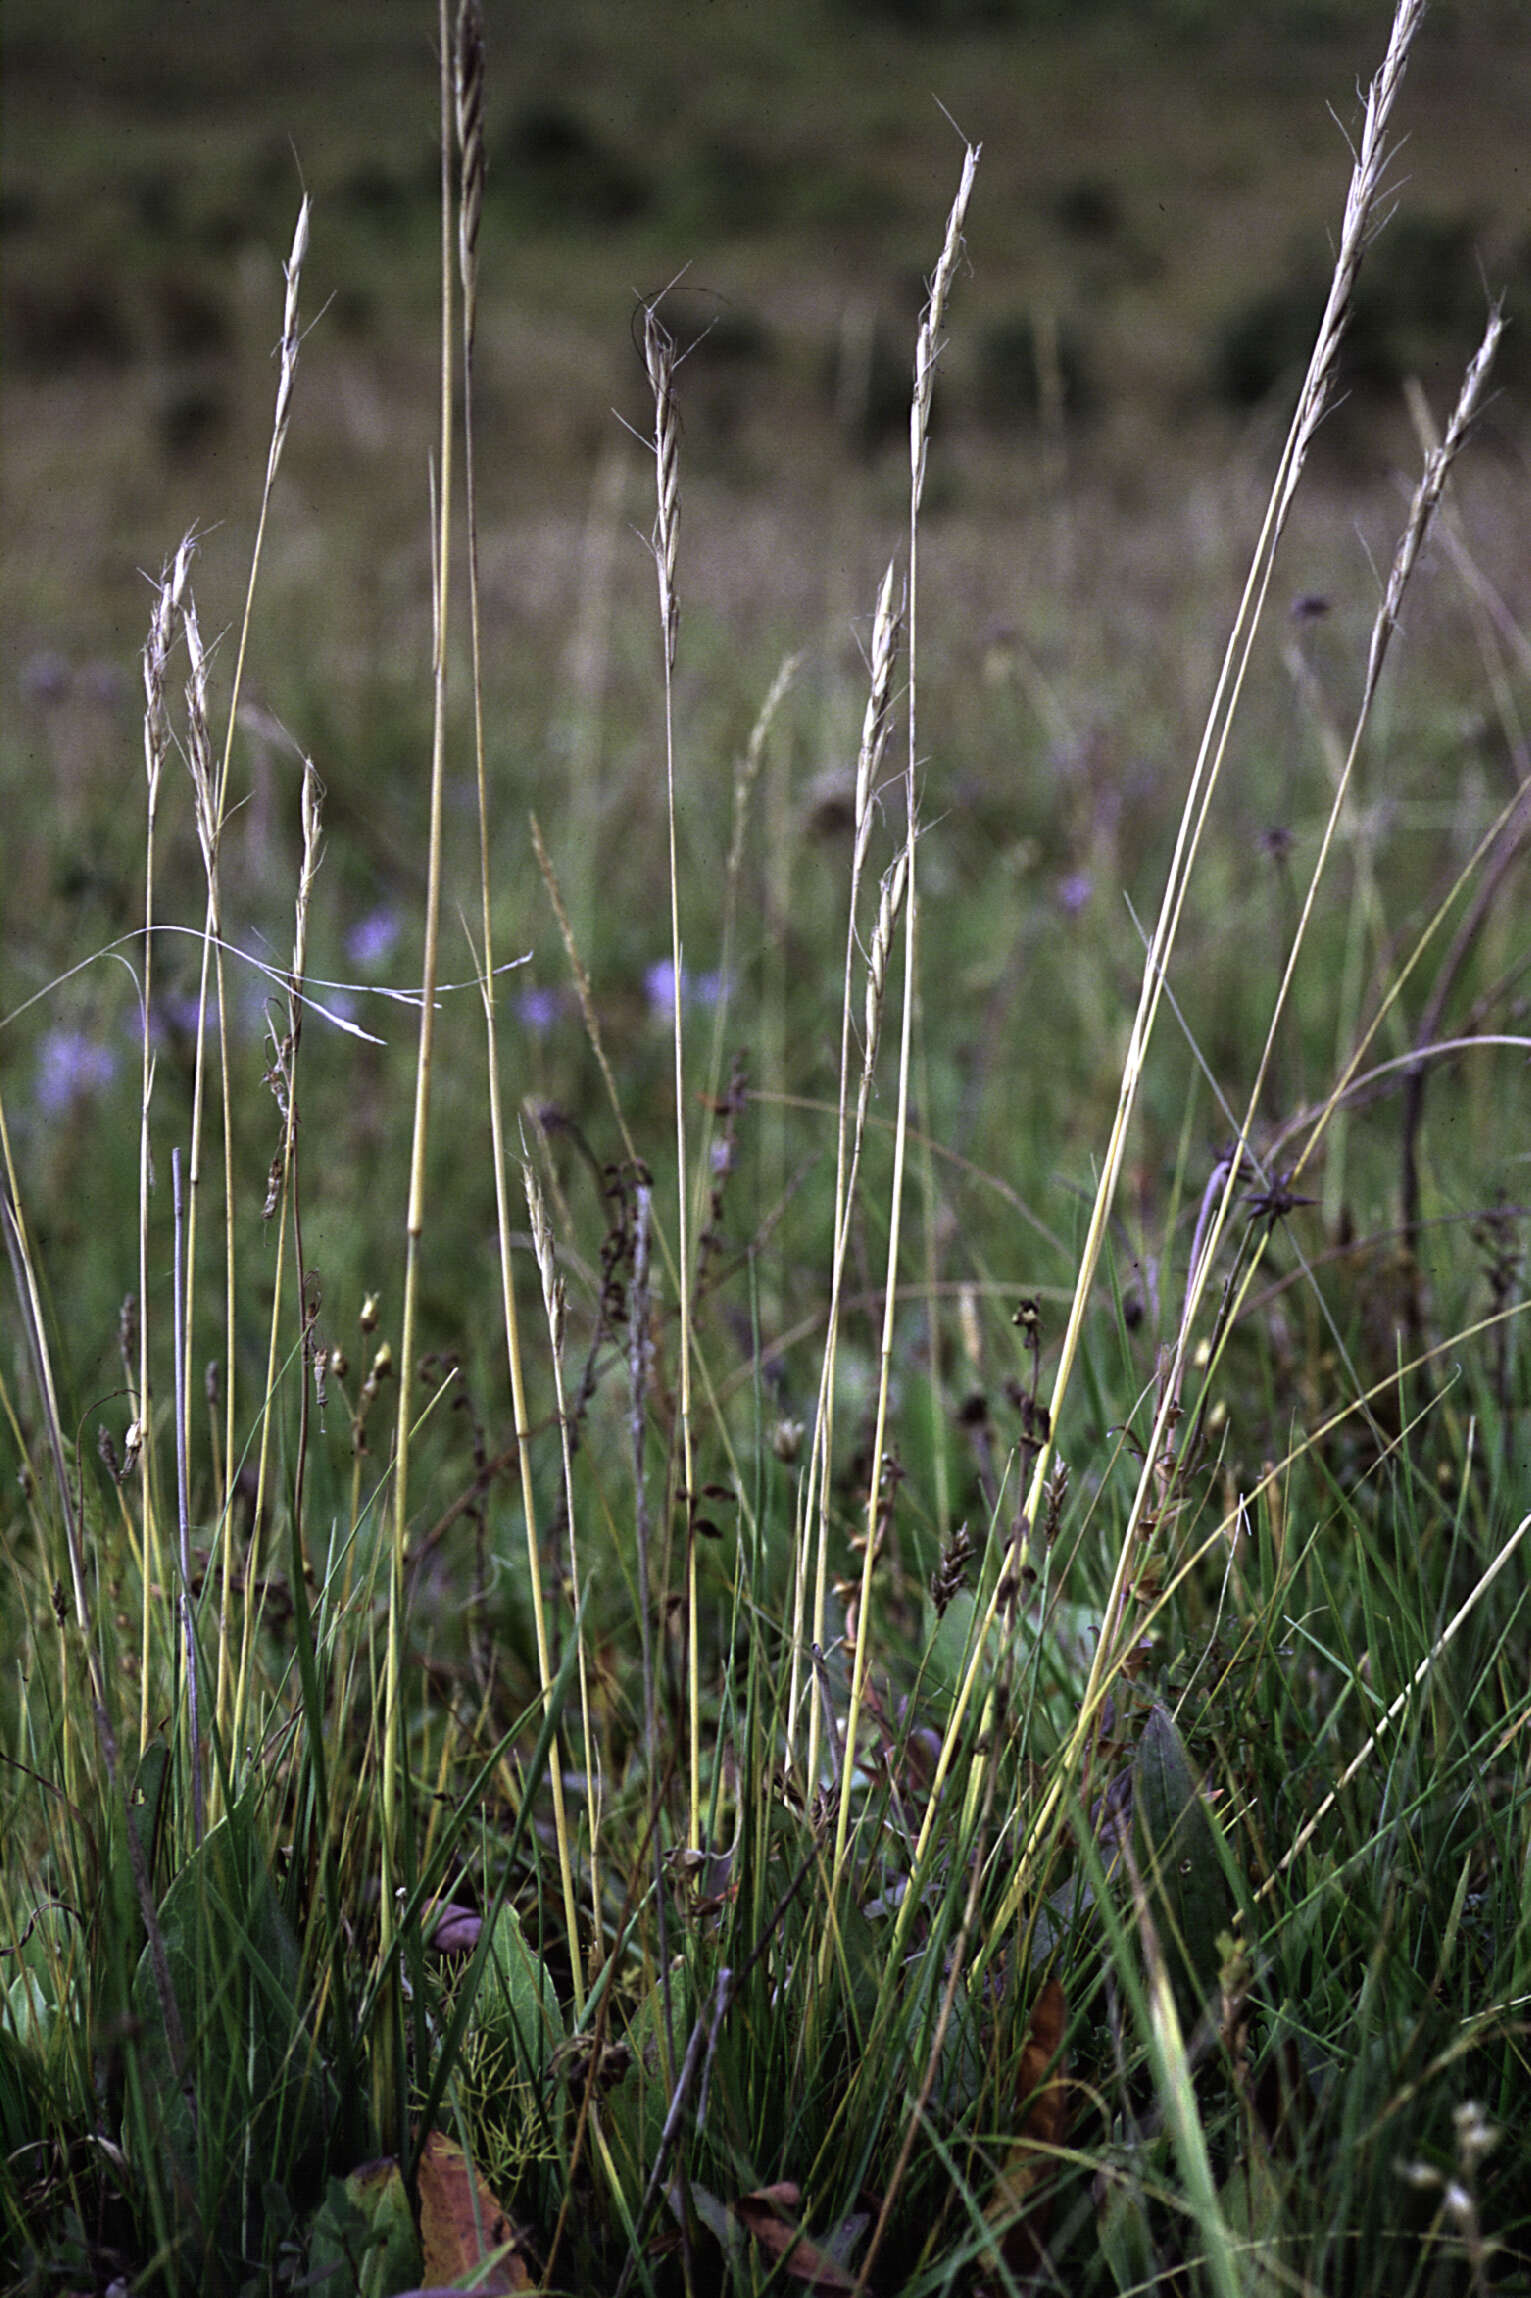 Image of true grasses